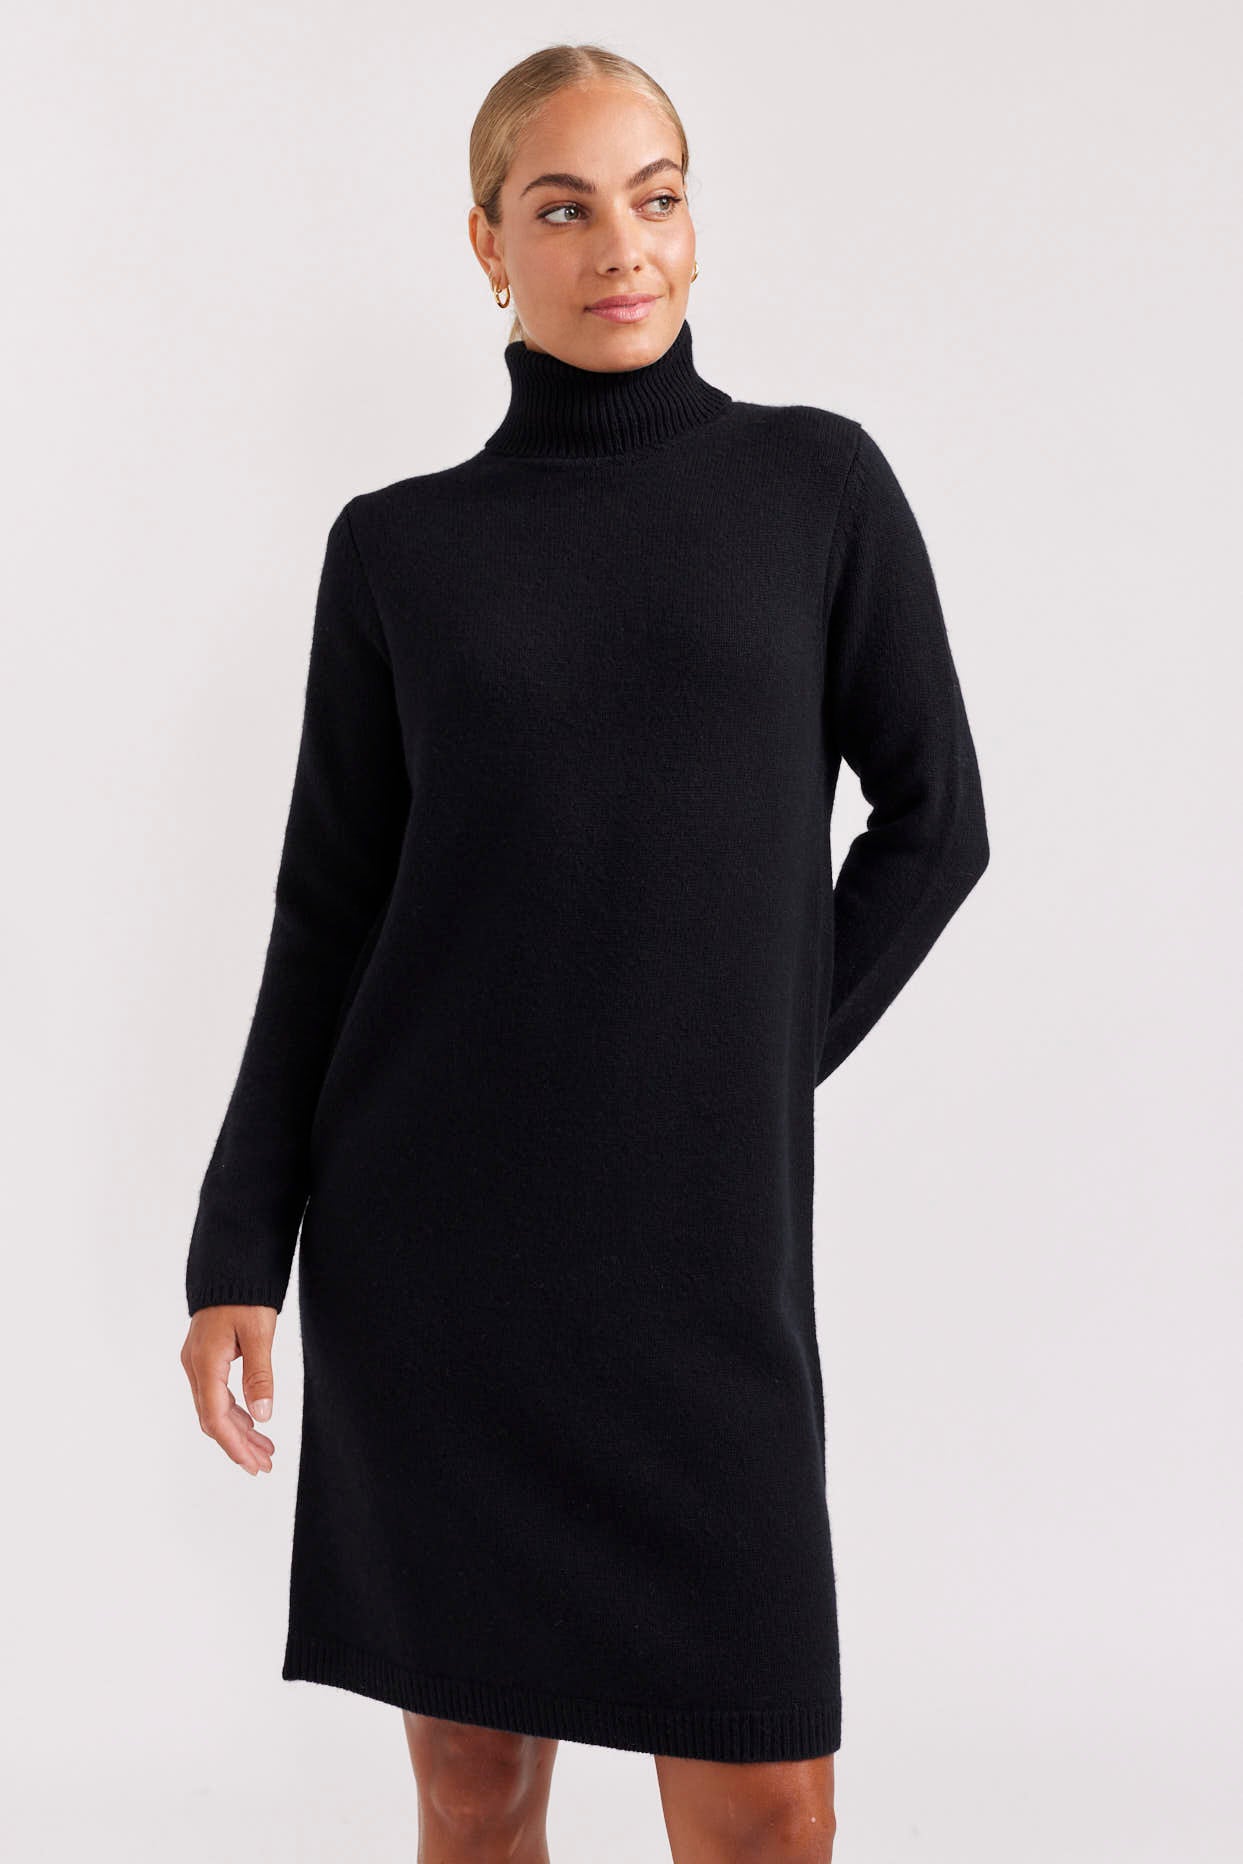 Alessandra Velma Merino Dress in Black